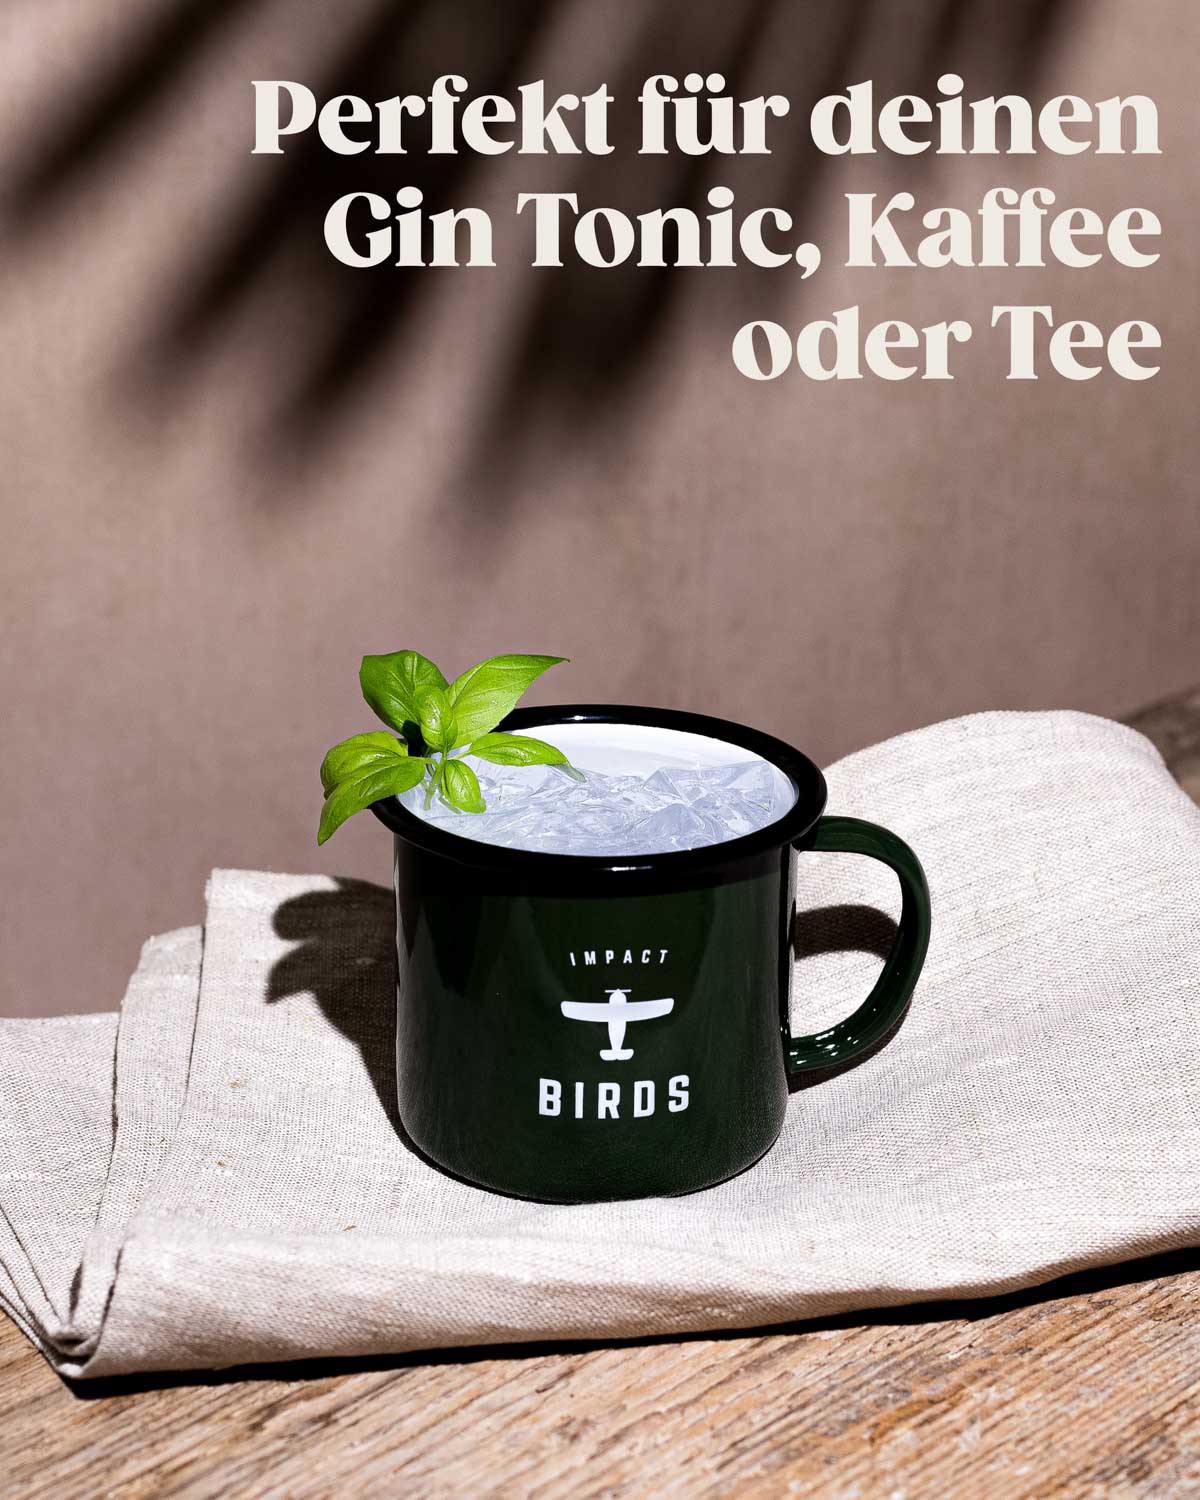 Unsere BIRDS Rainforest Festival Tasse mit einem leckerem Gin Tonic. Die hochwertige Tasse eignet sich darüber hinaus auch hervorragend für Kaffee oder Tee. 